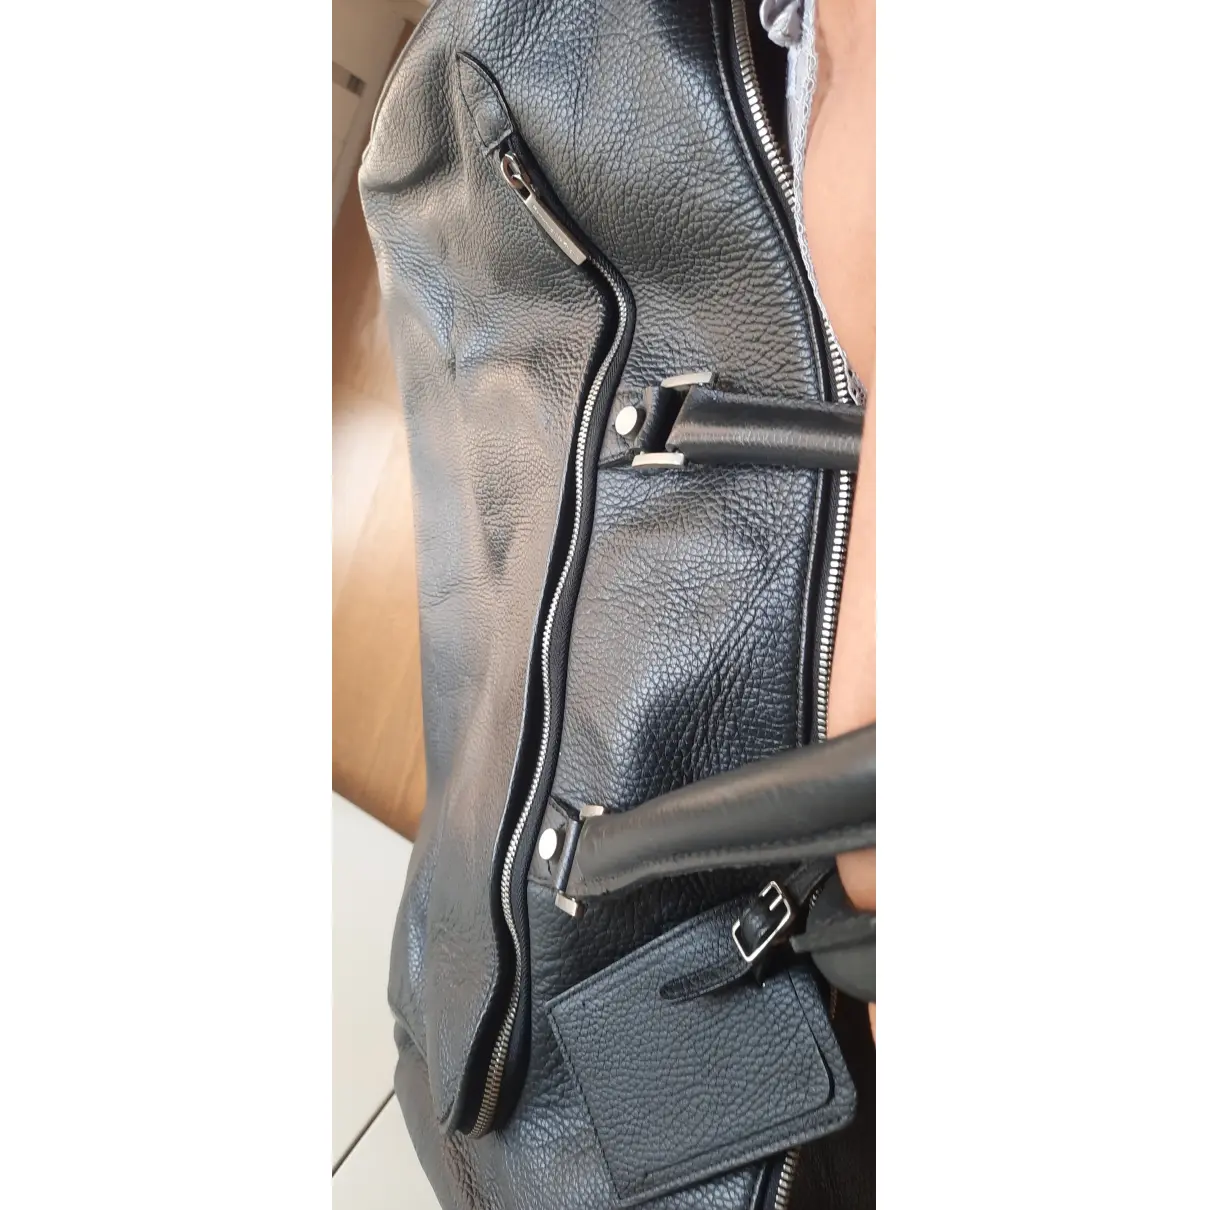 Buy Ermenegildo Zegna Leather travel bag online